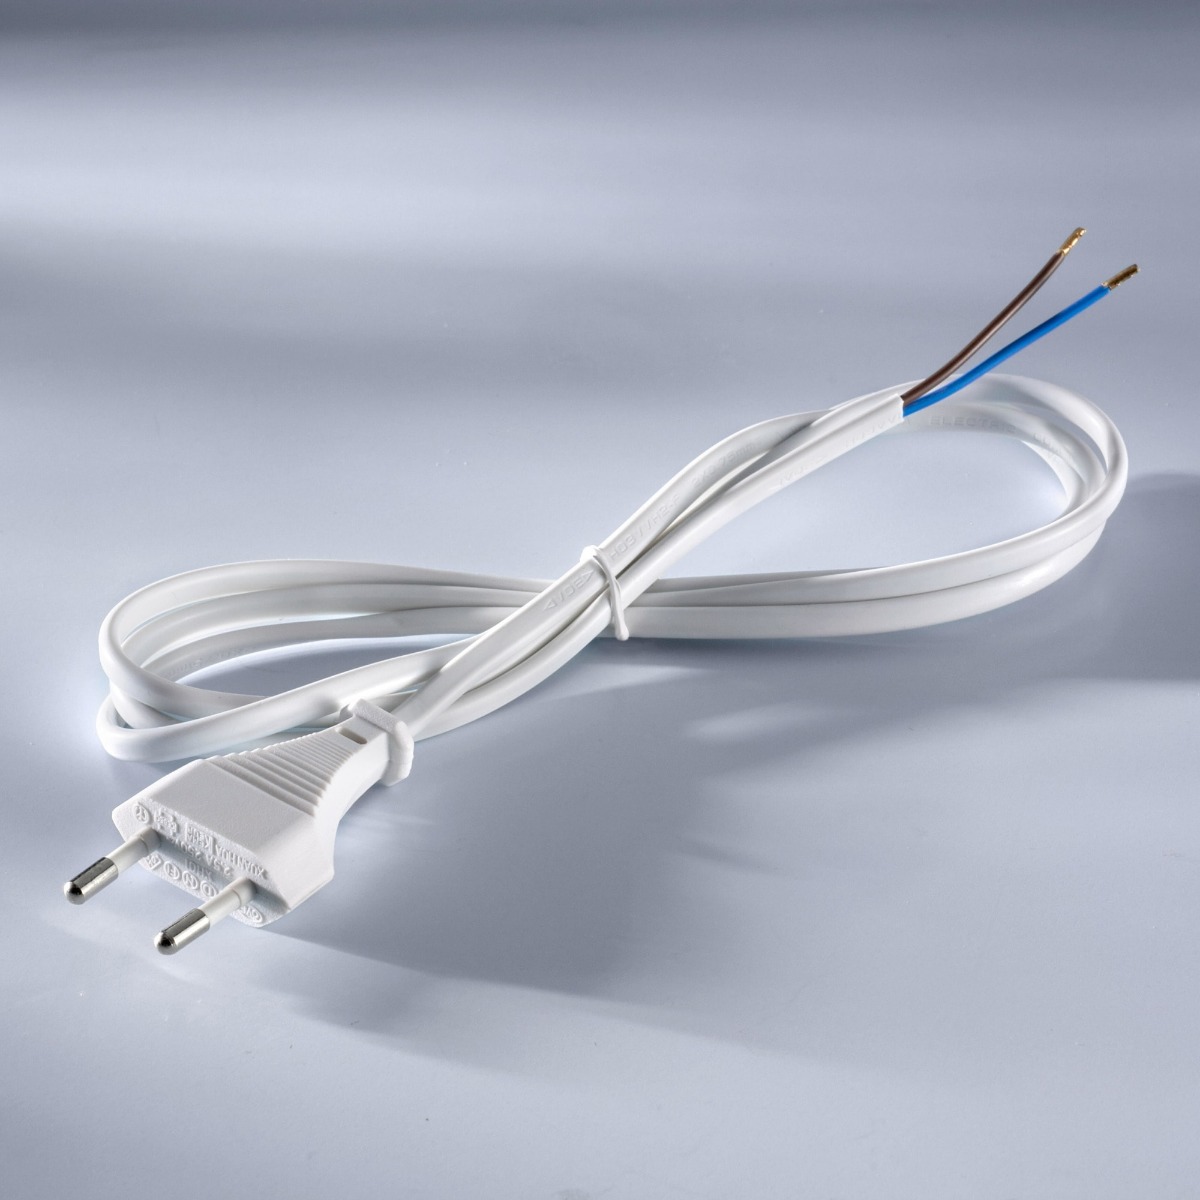 Cablu cu stecher de retea 230V 1.5m lungime culoare alba